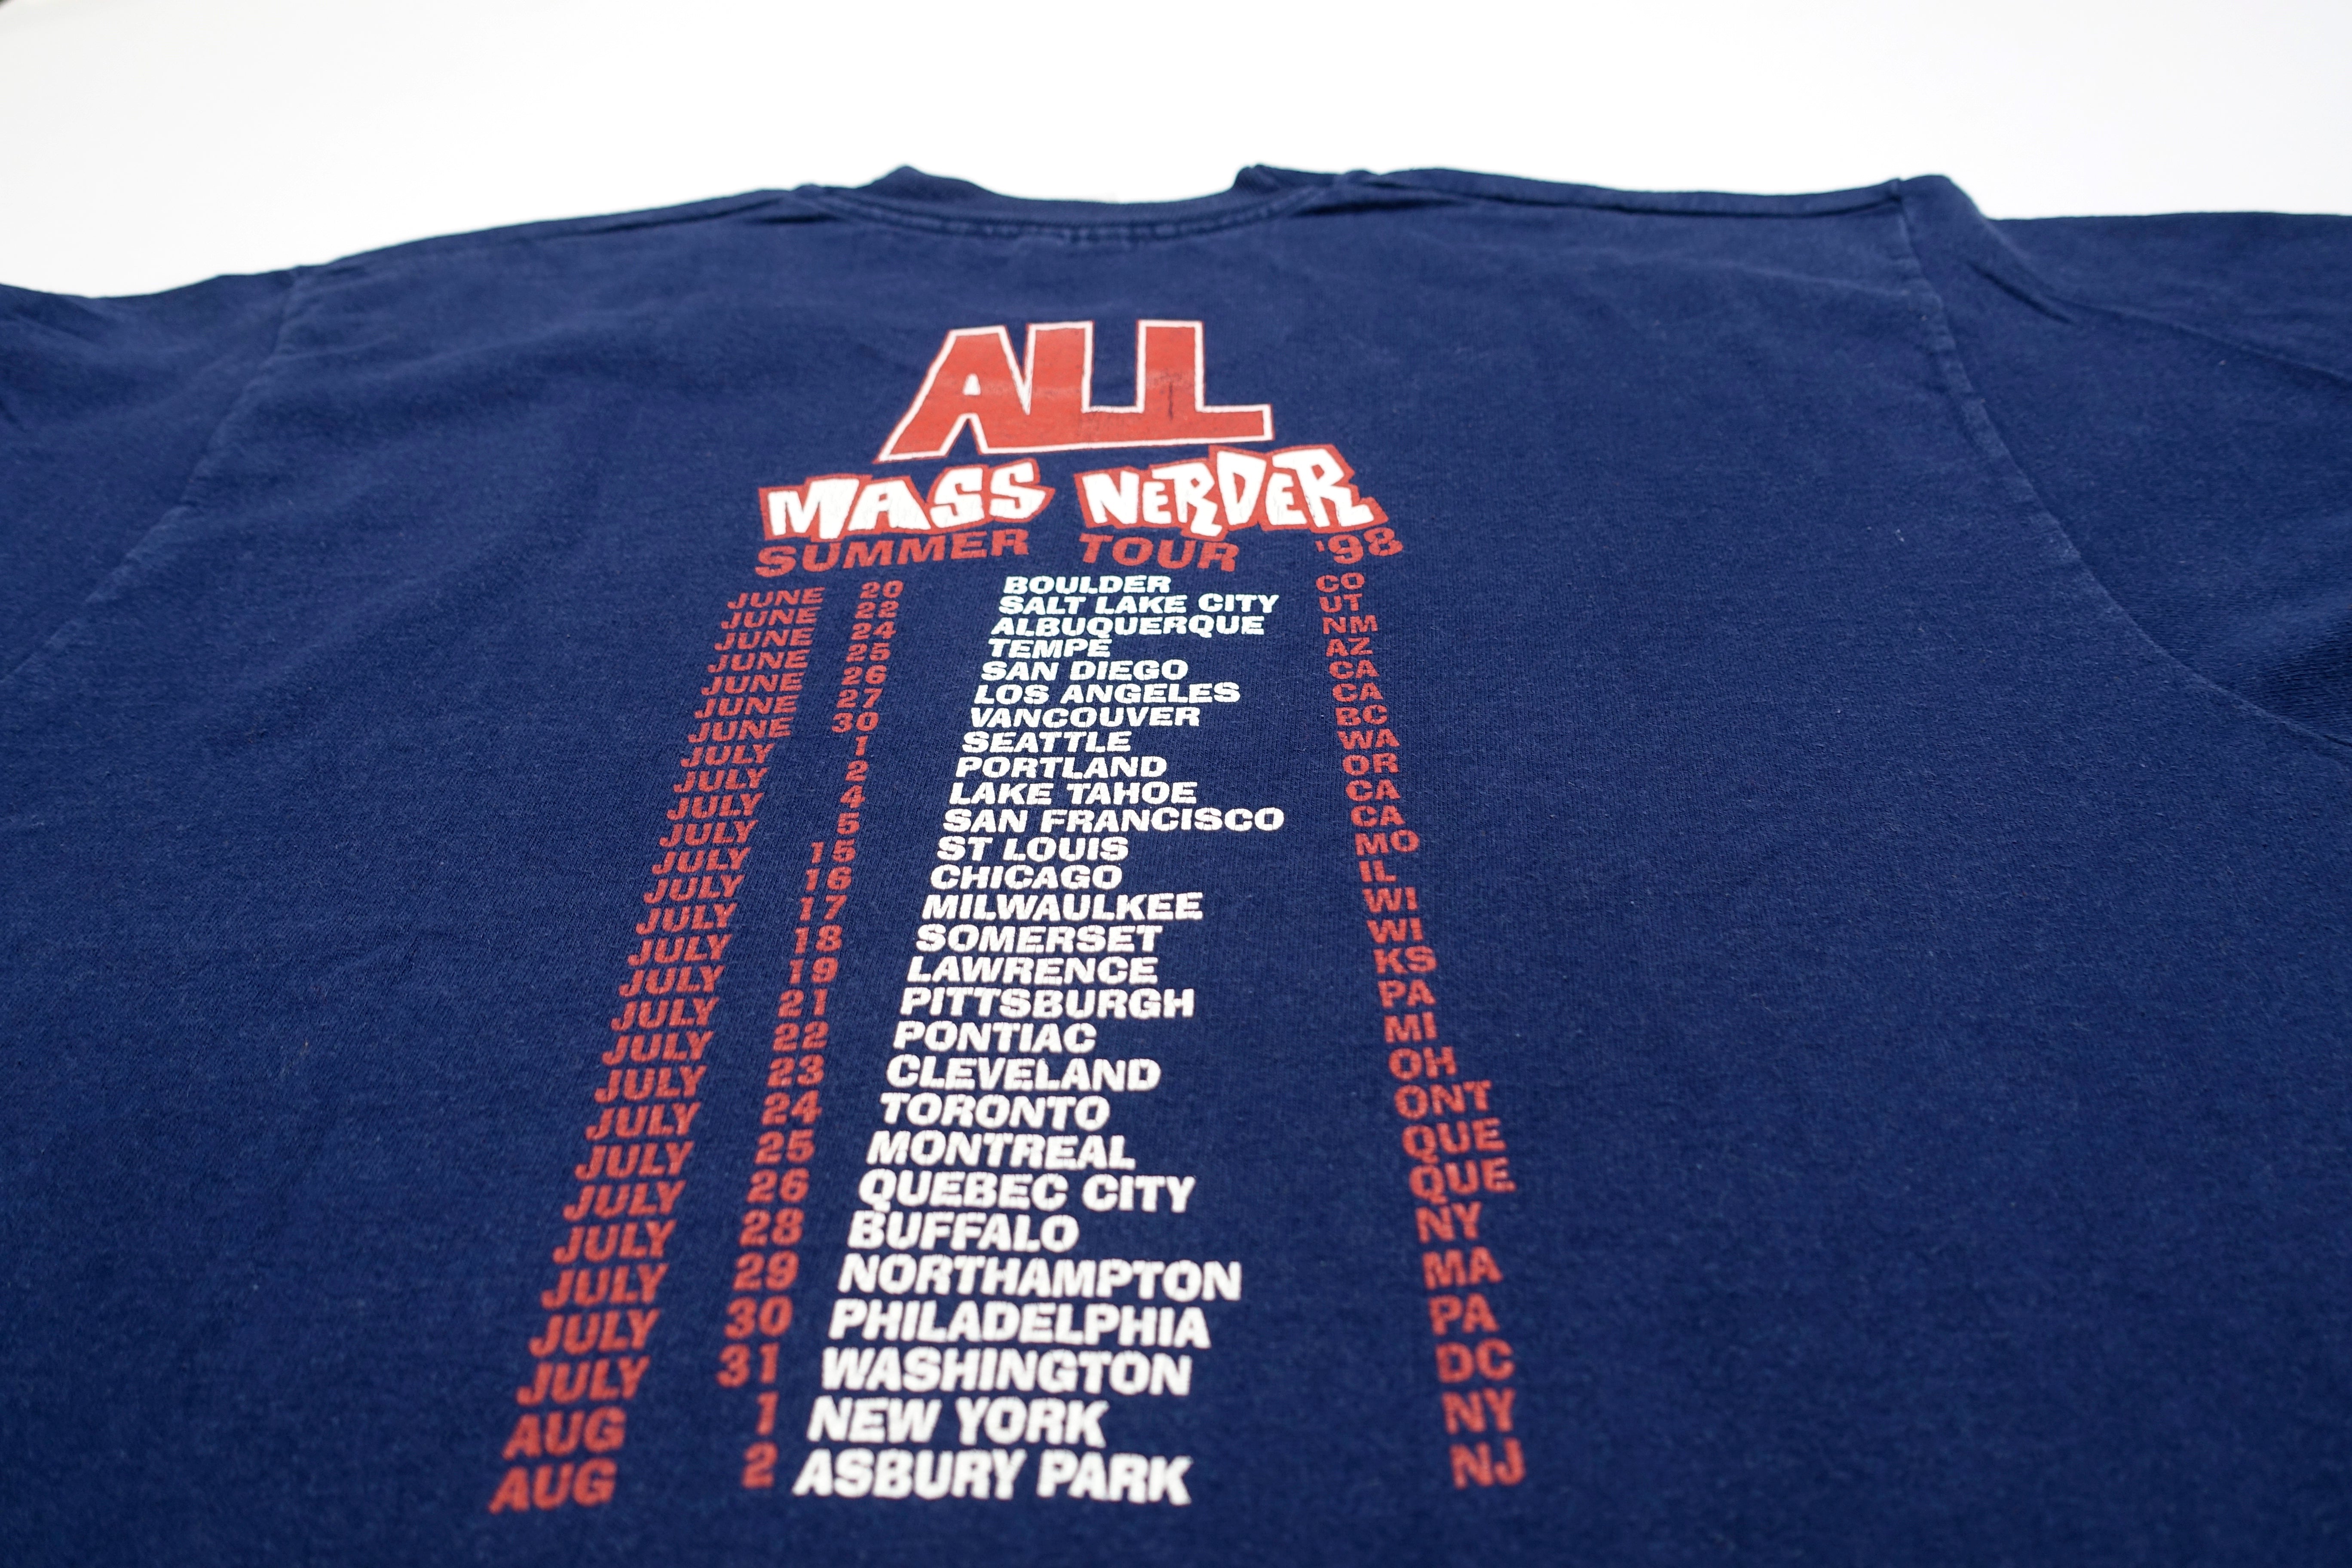 ALL - Mass Nerder 1998 Summer Tour Shirt Size Large